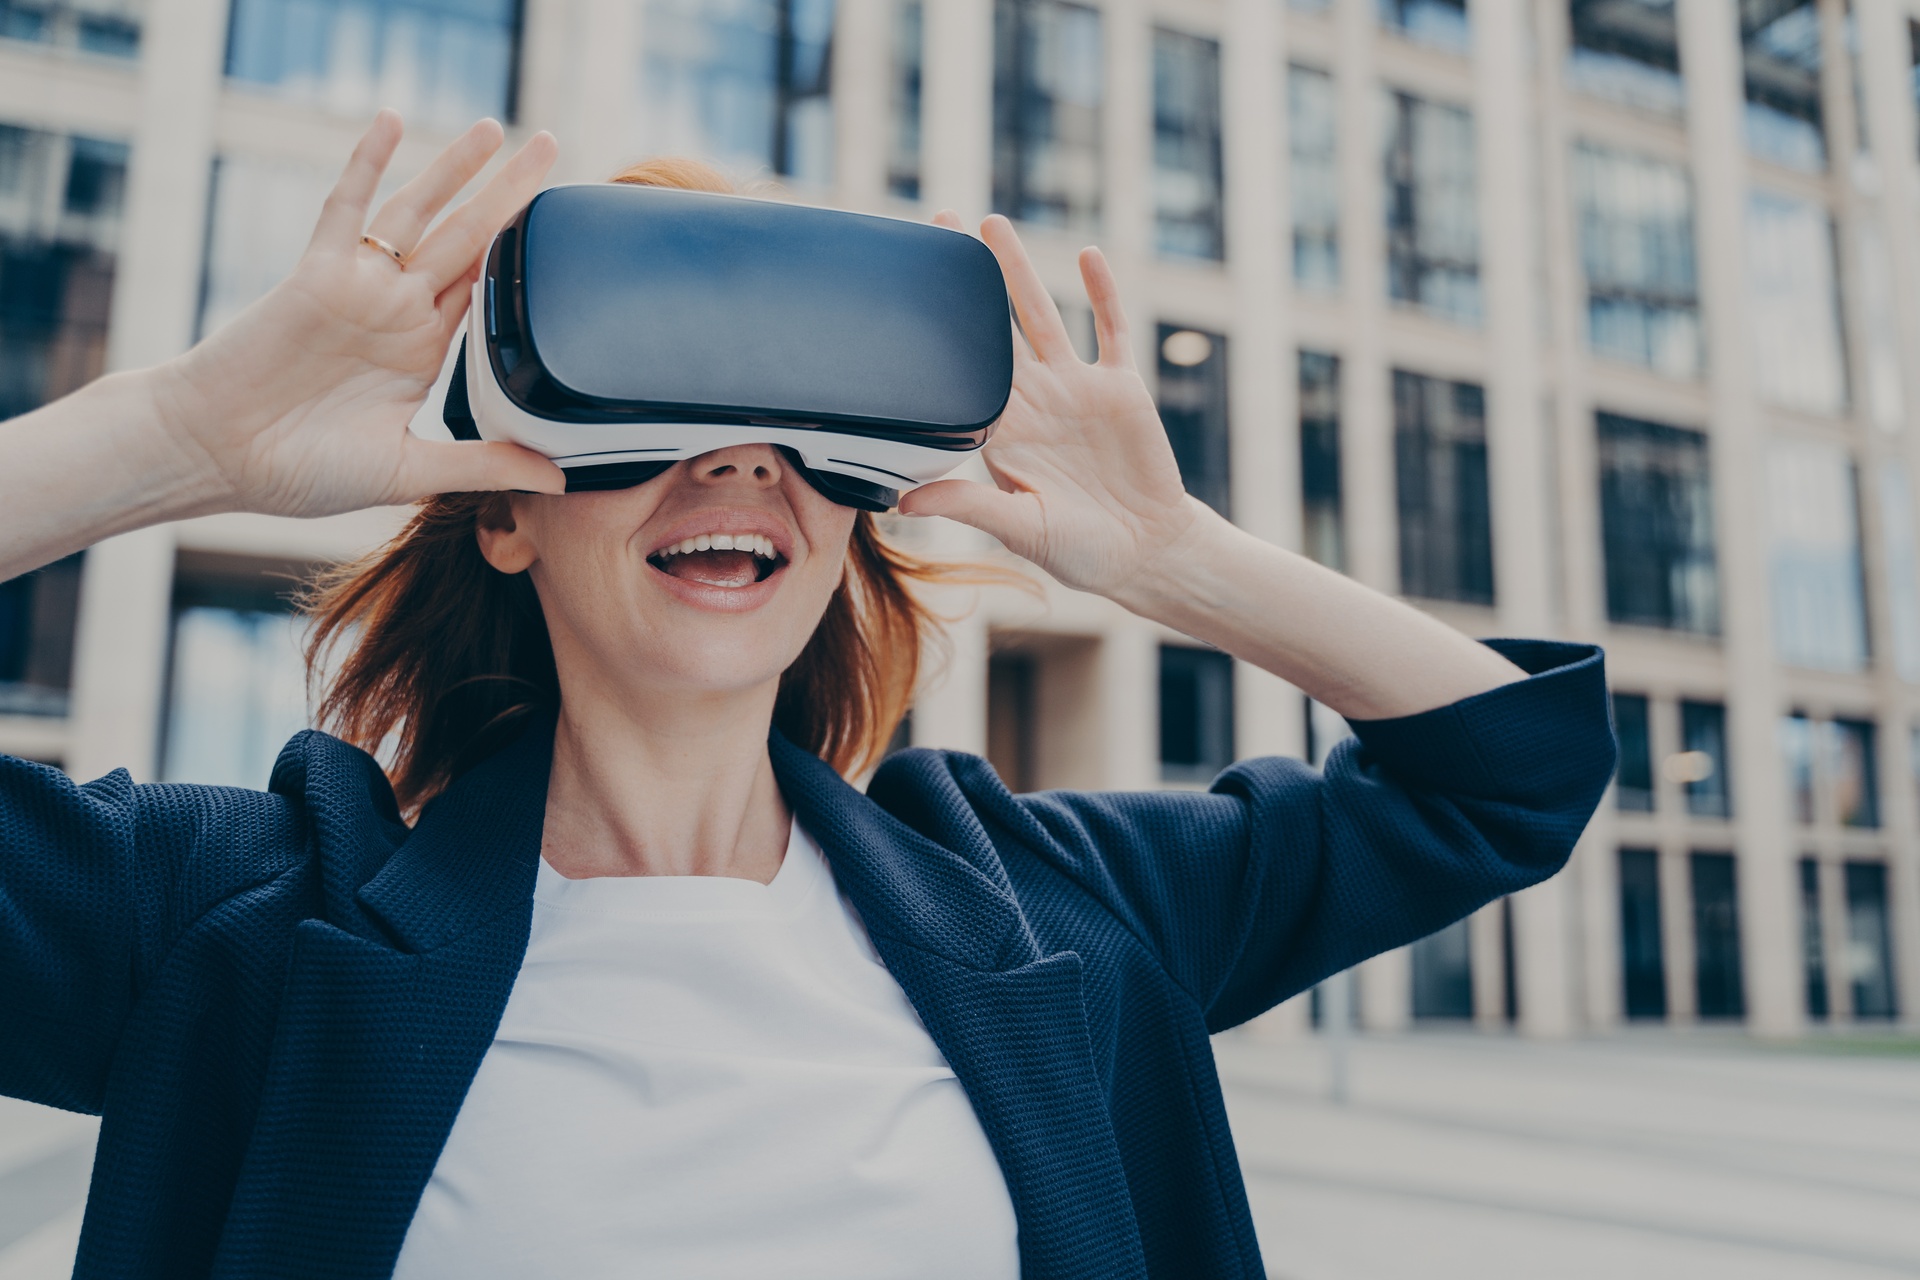 6G smartphone: i visori di realtà virtuale sono ancora ingombranti e scomodi, ma verso il 2030 tutto potrebbe cambiare